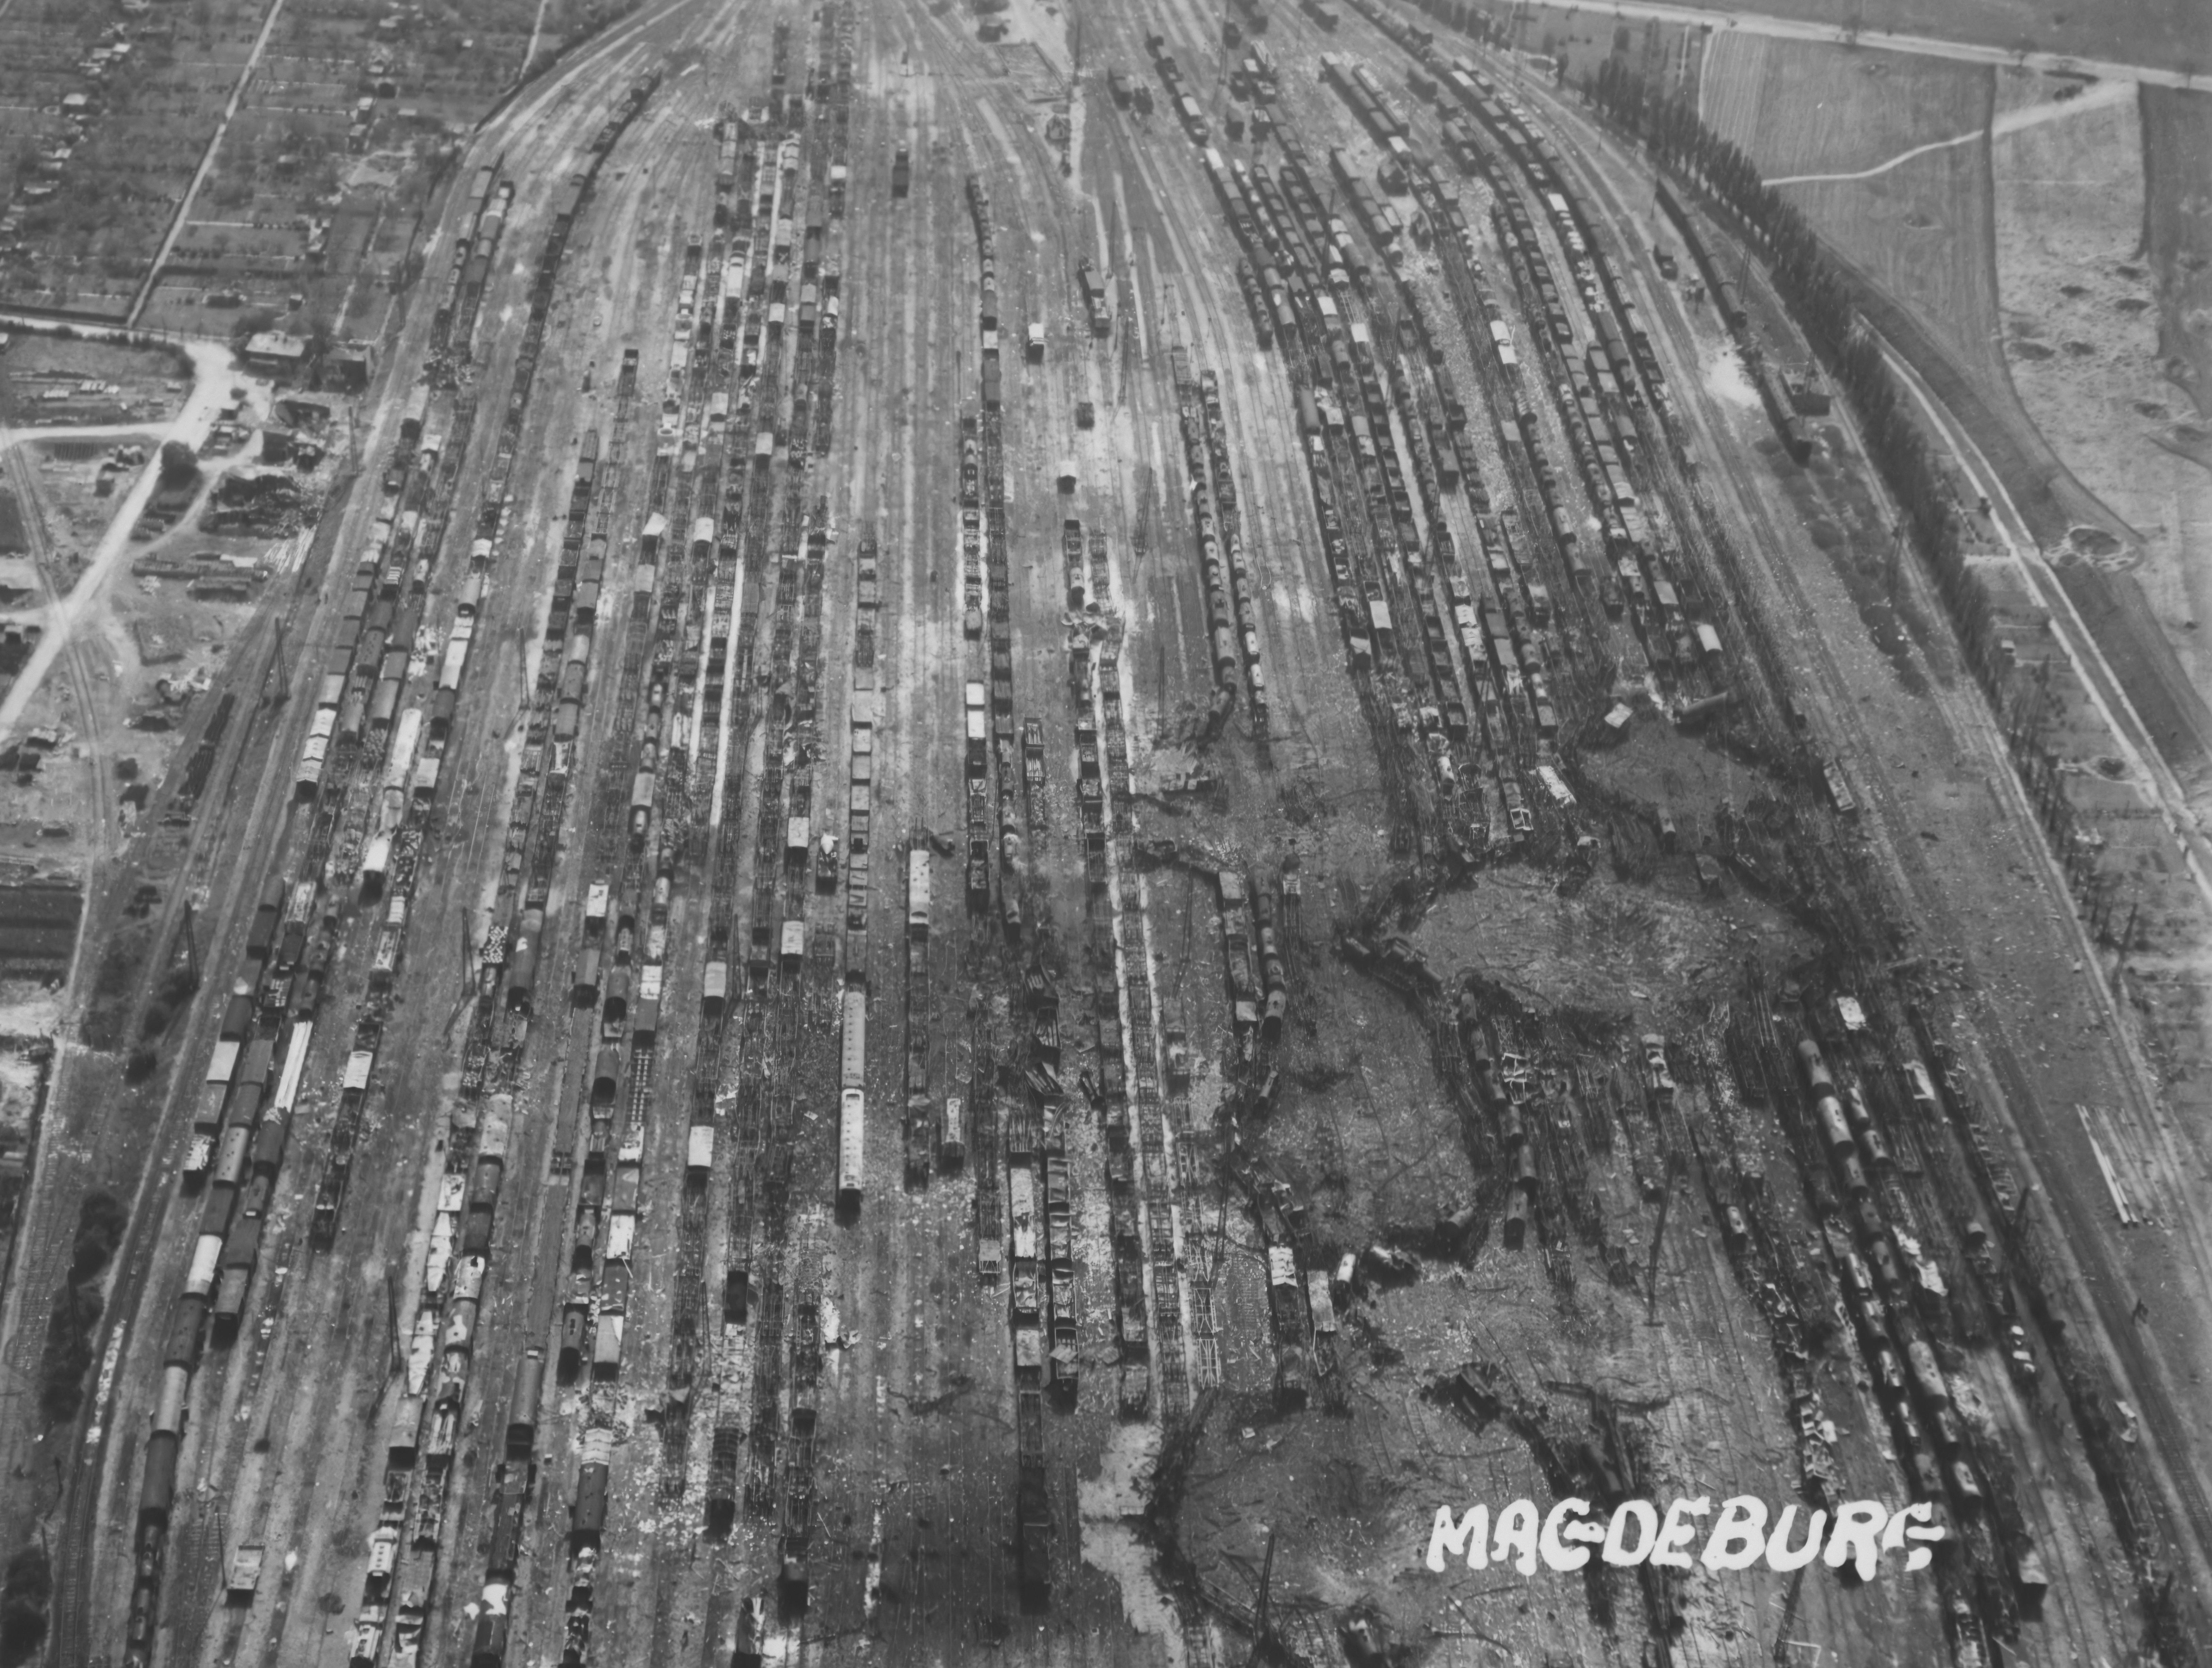 Luftbild 1945 der Gleisanlagen in Magdeburg Buckau